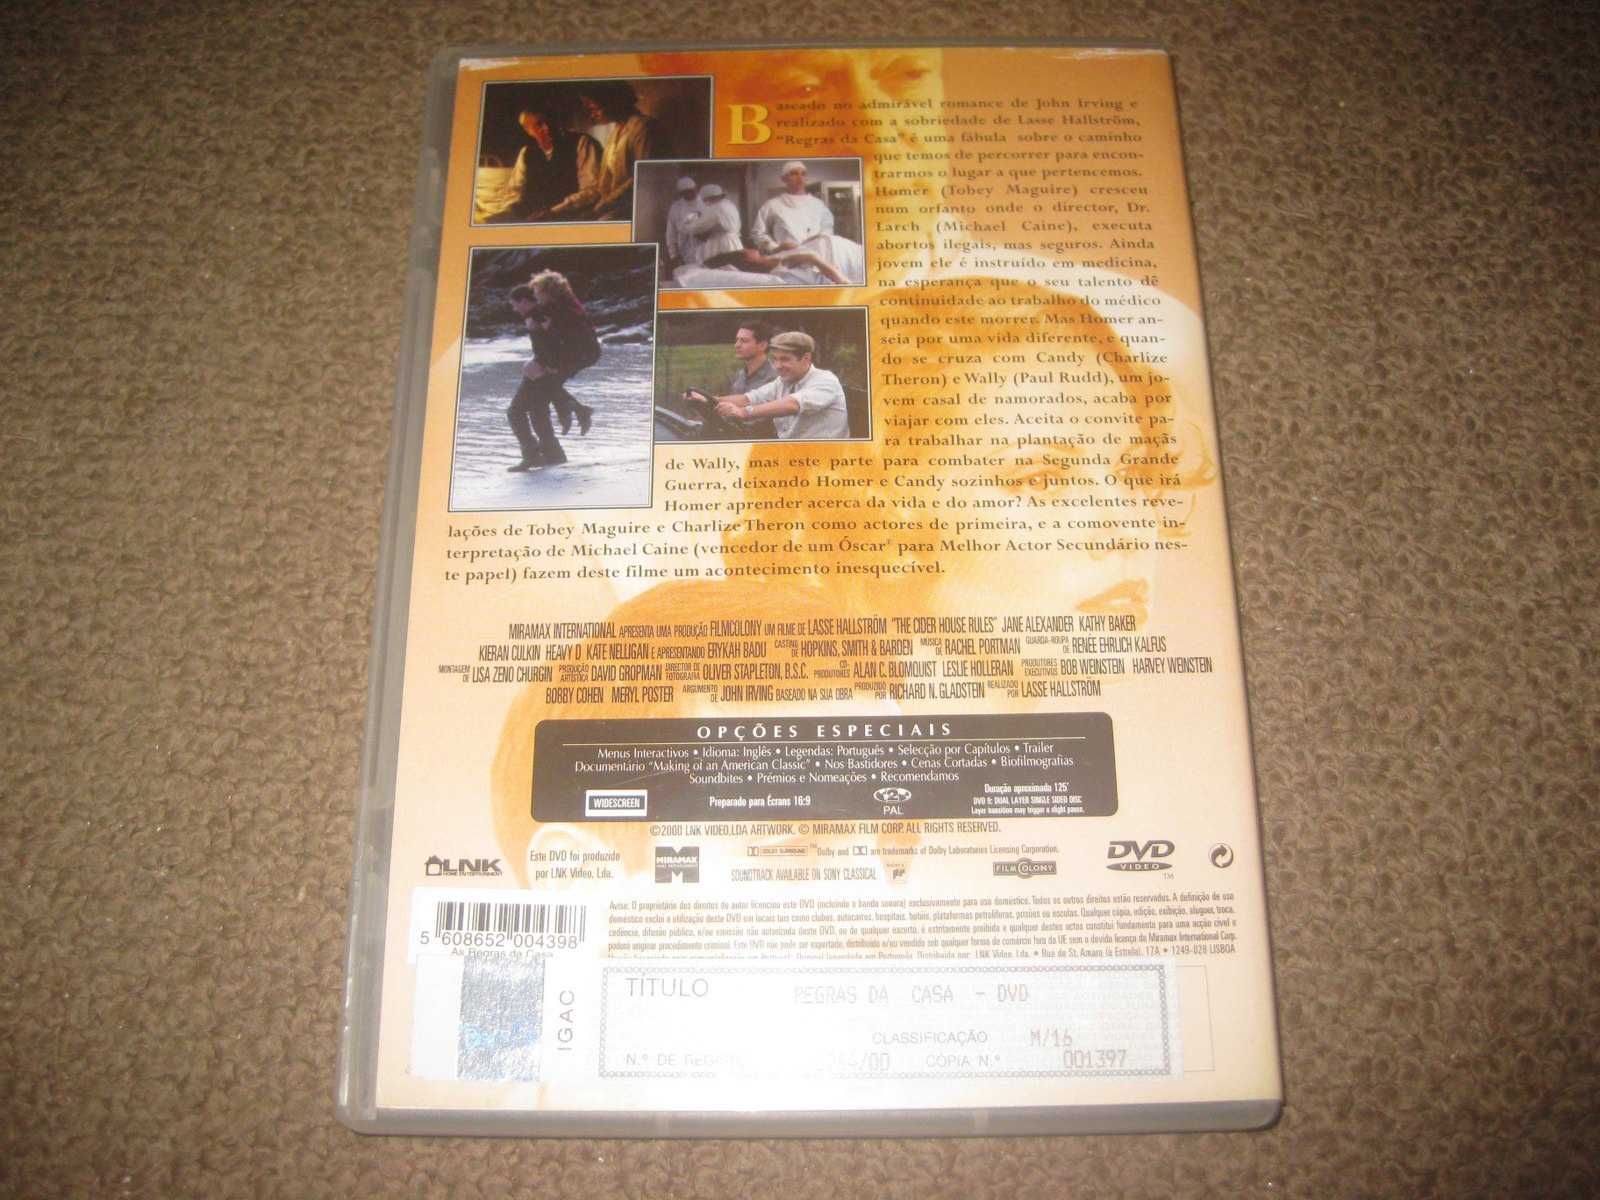 DVD "Regras da Casa" com Michael Caine/Raro!